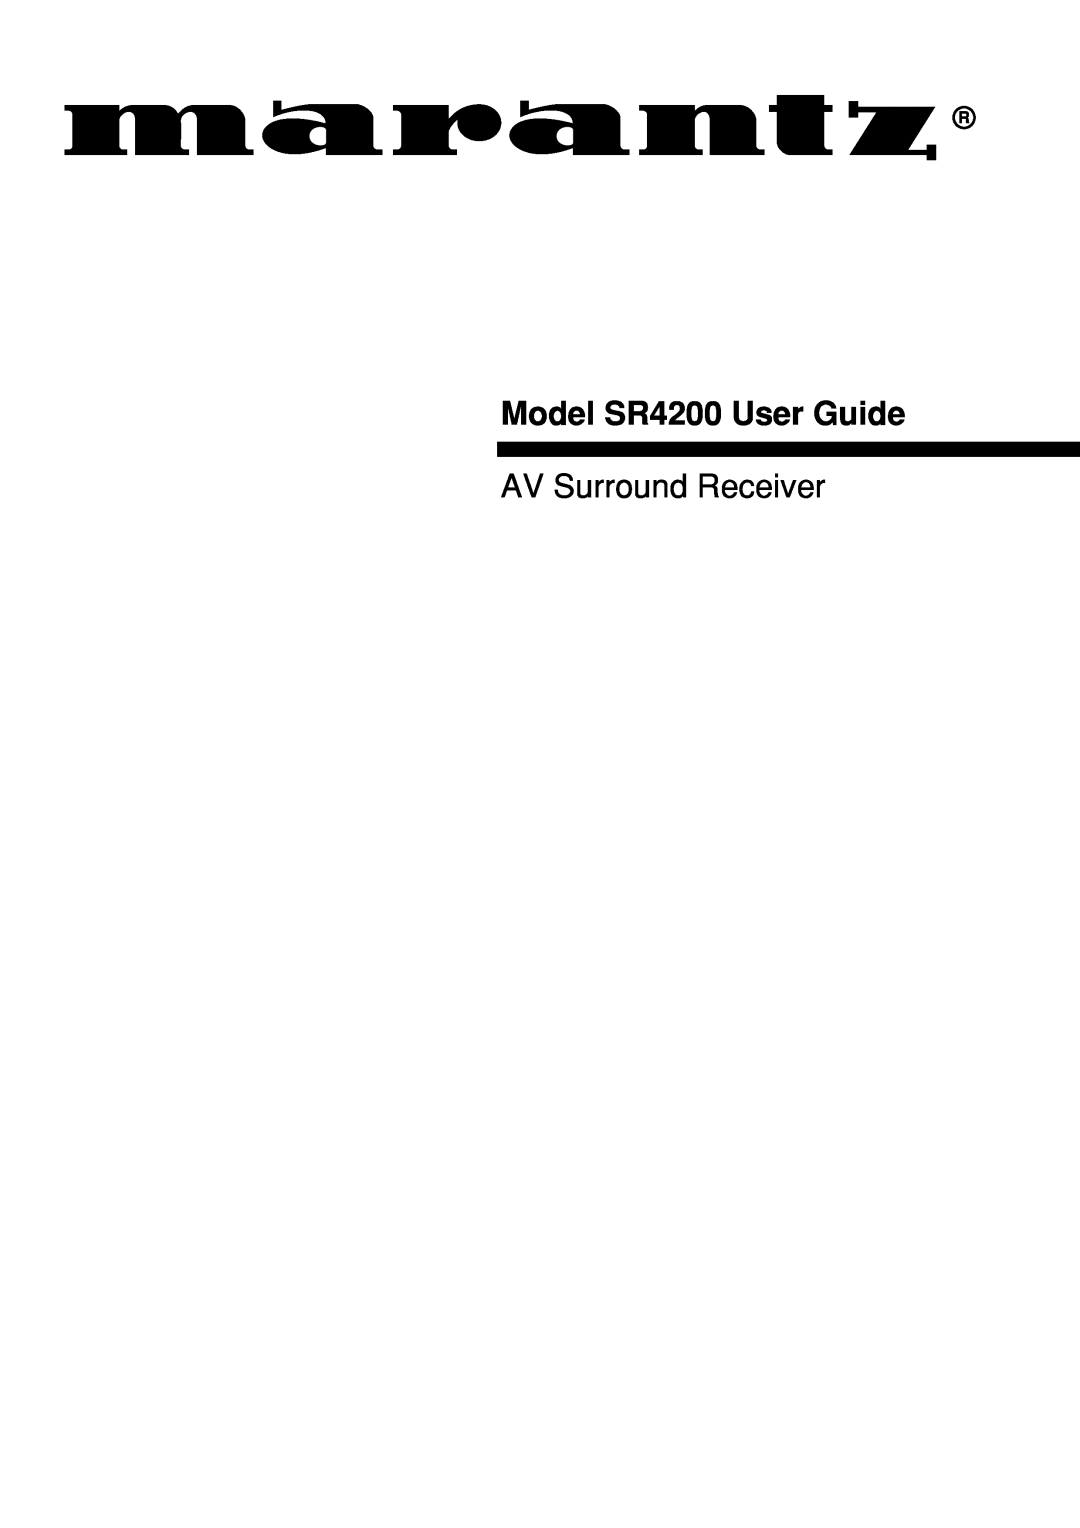 Marantz manual Model SR4200 User Guide, AV Surround Receiver 